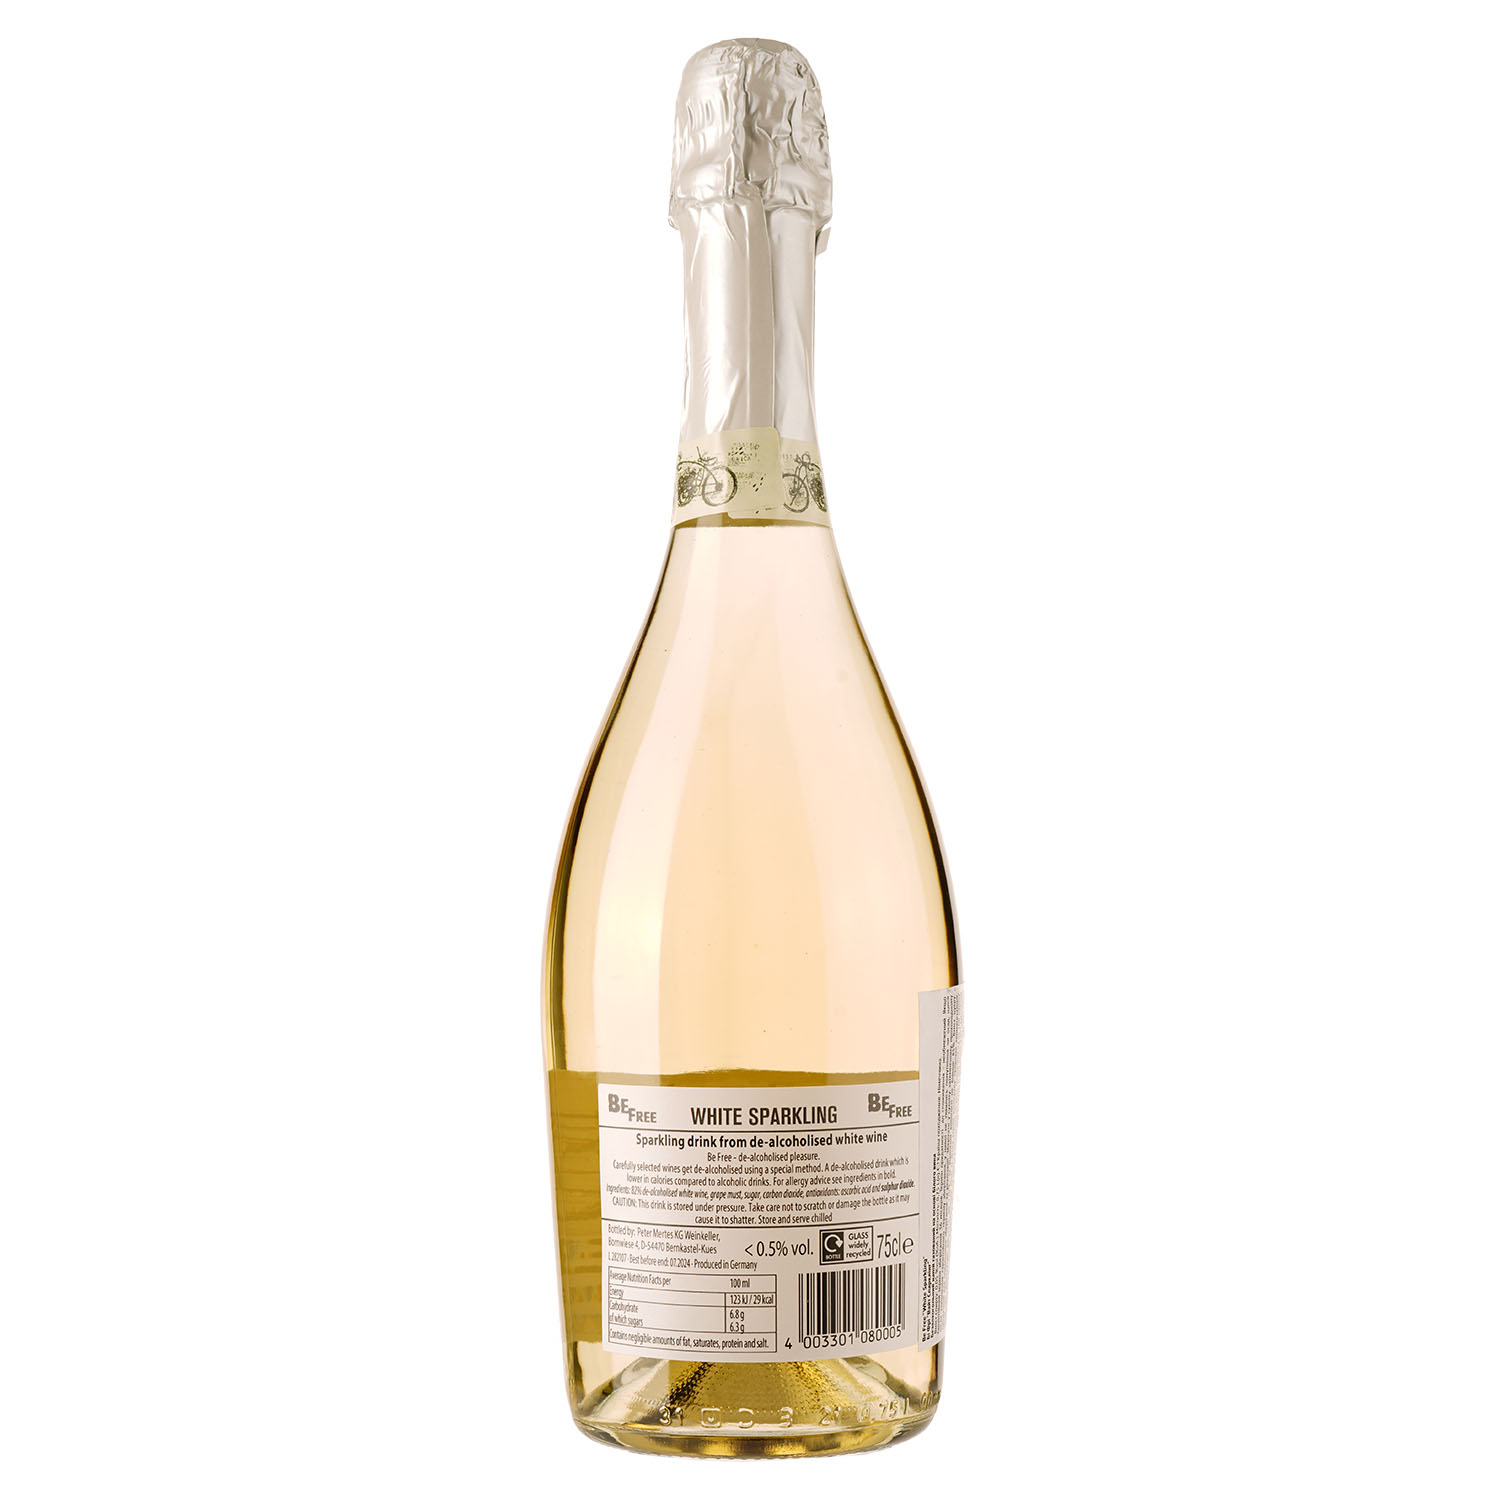 Вино игристое безалкогольное Be Free White Sparkling, белое, полусладкое, 0,5%, 0,75 л - фото 2